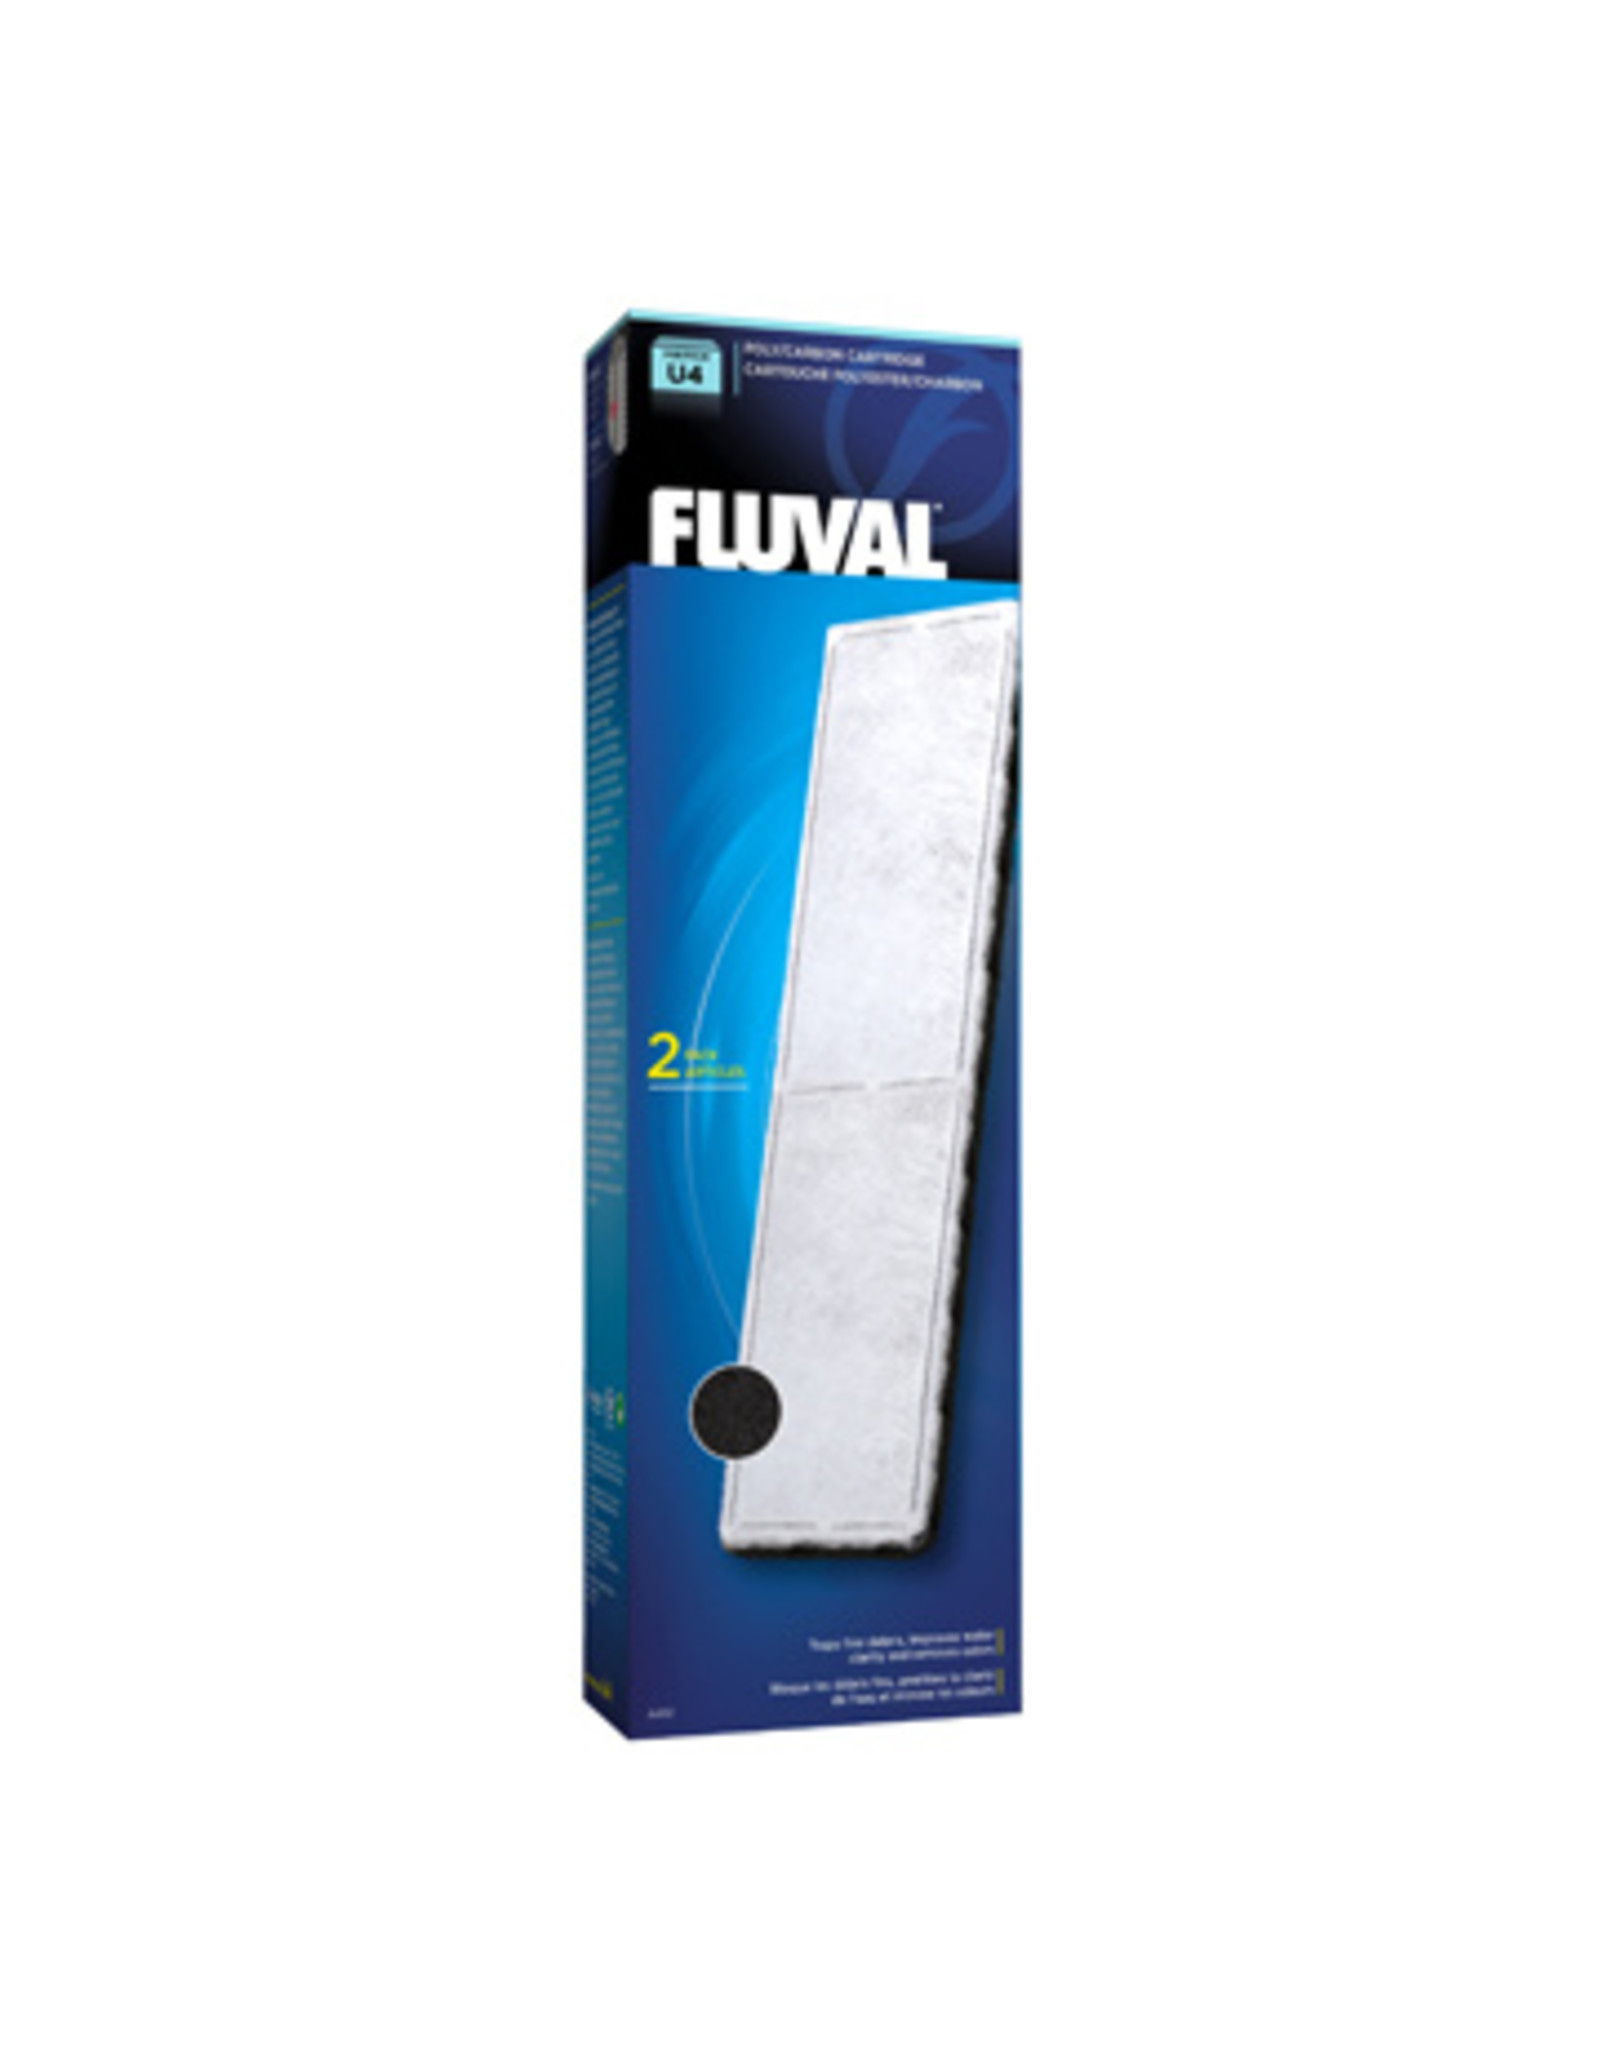 Fluval FLUVAL Underwater Filter Cartridge 2 Pack